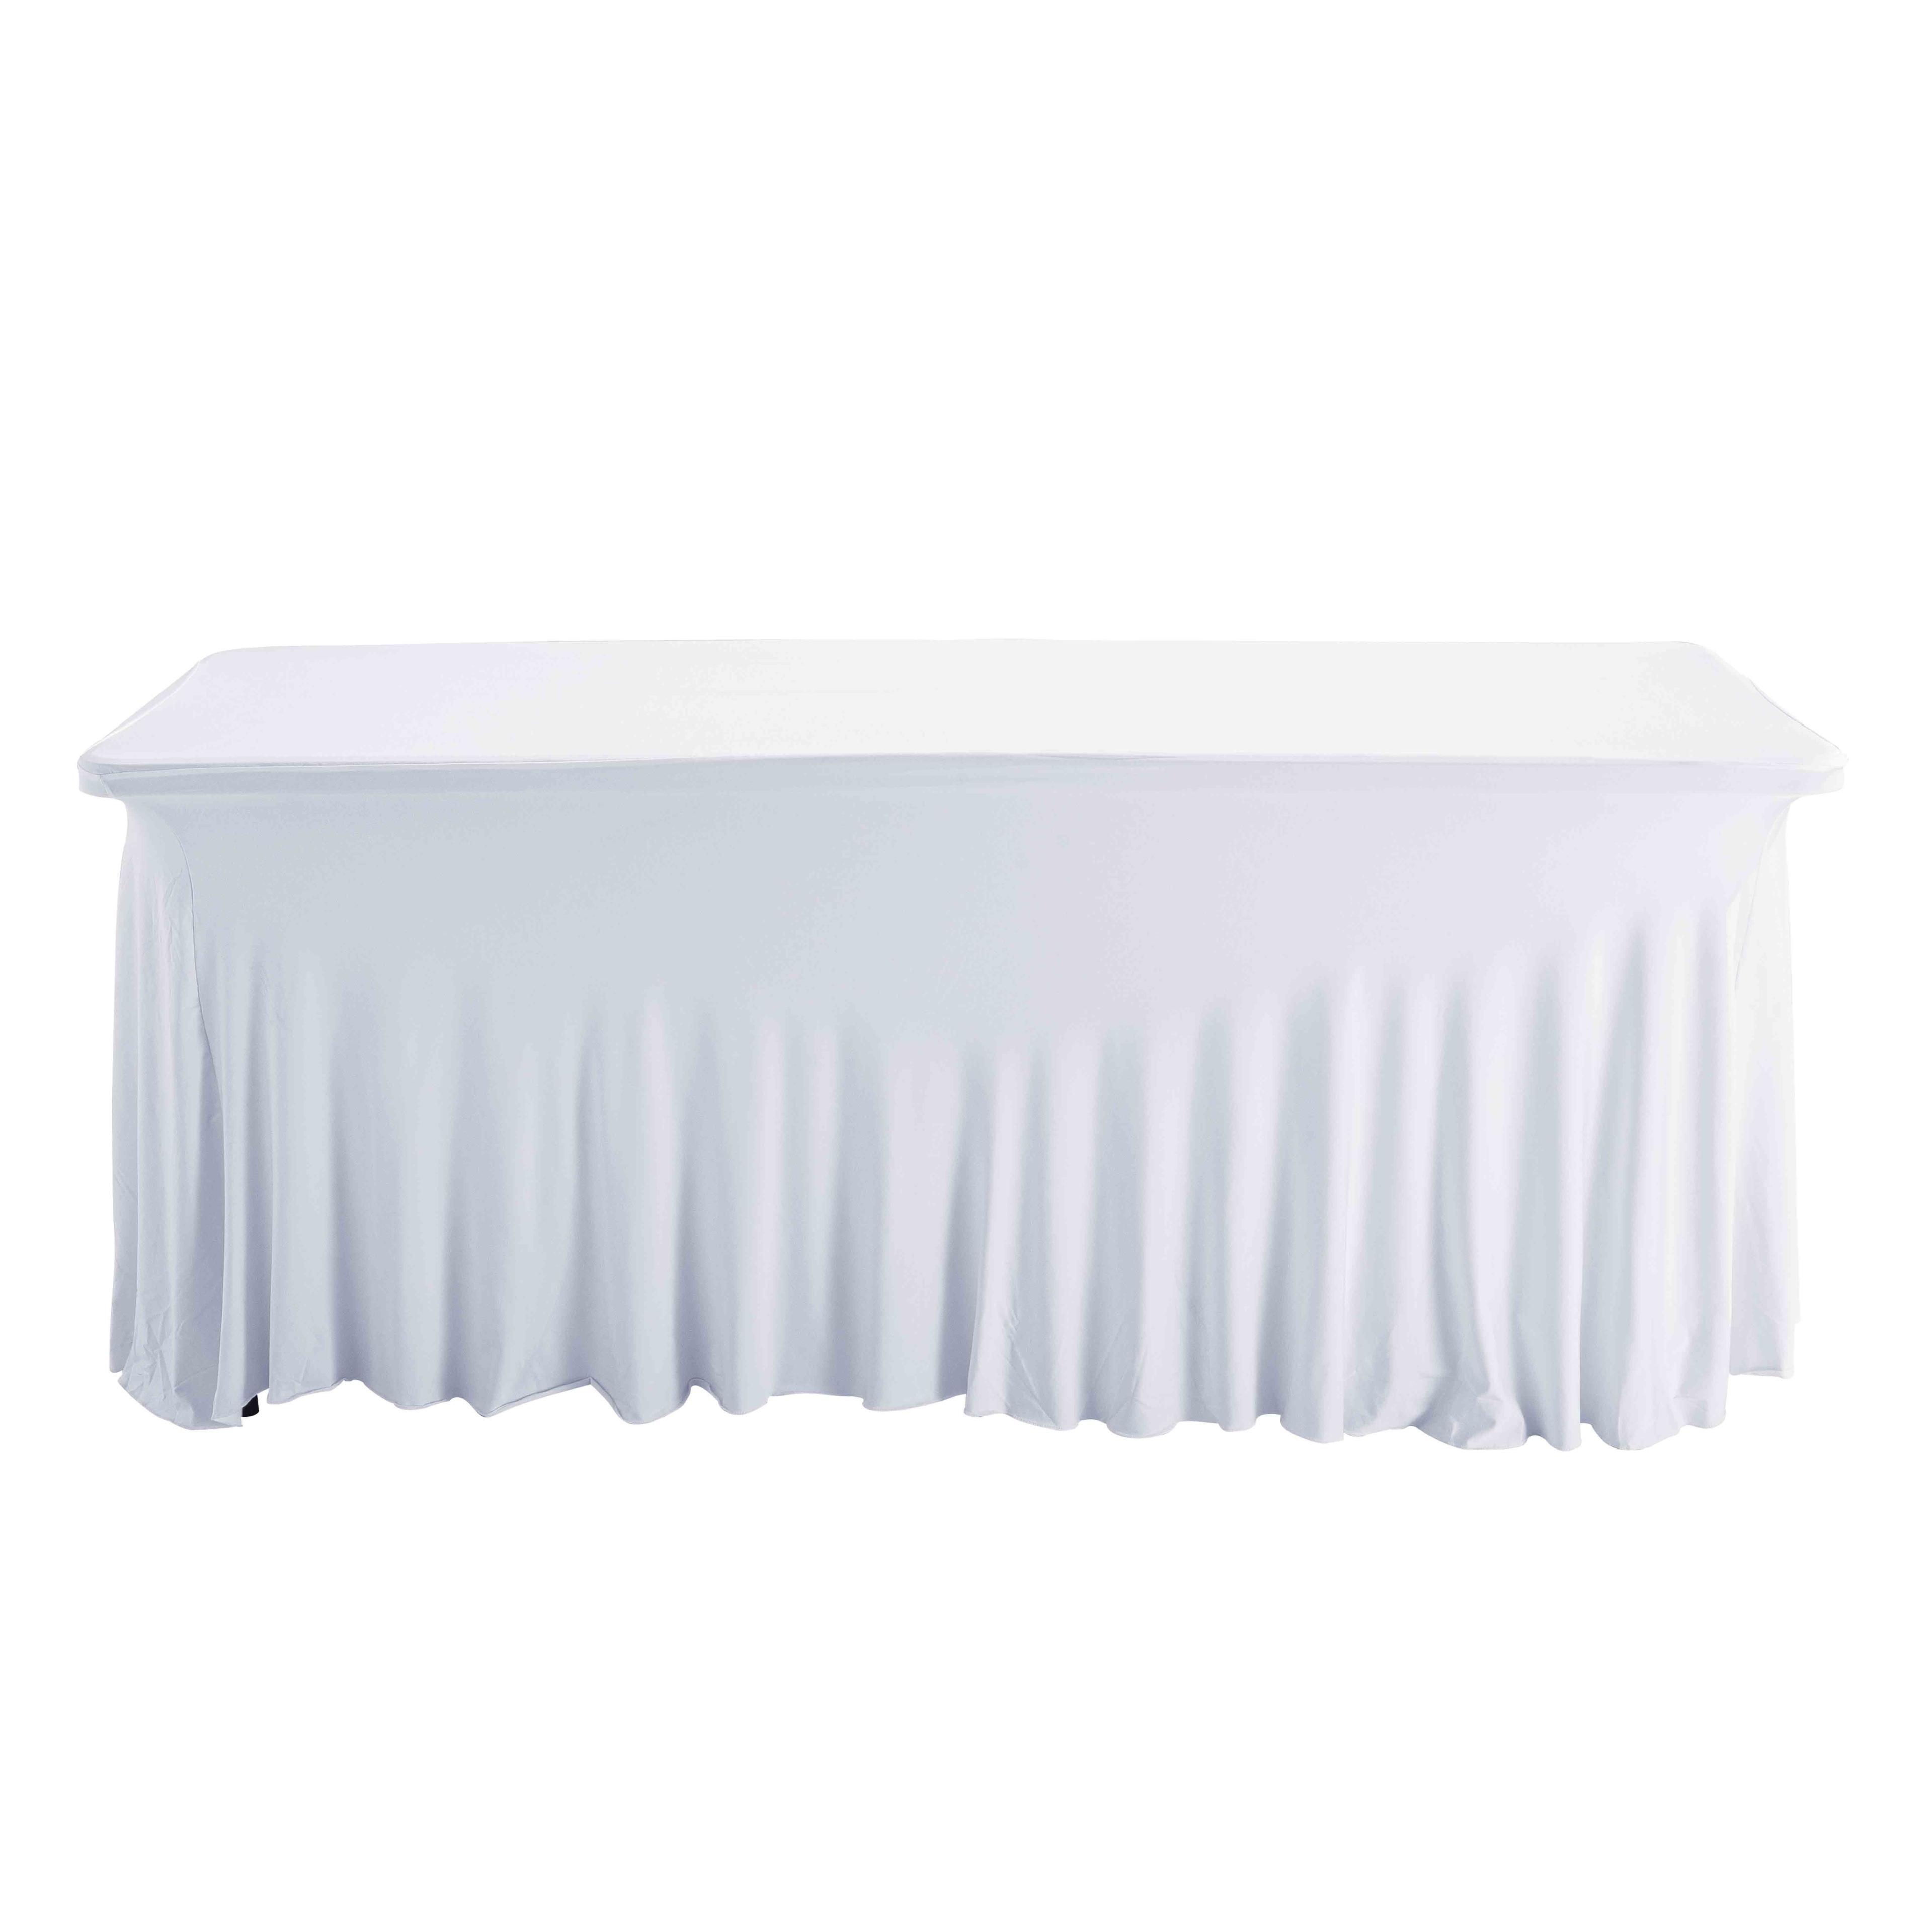 Housse blanche pour table pliante 180 cm - Conforama